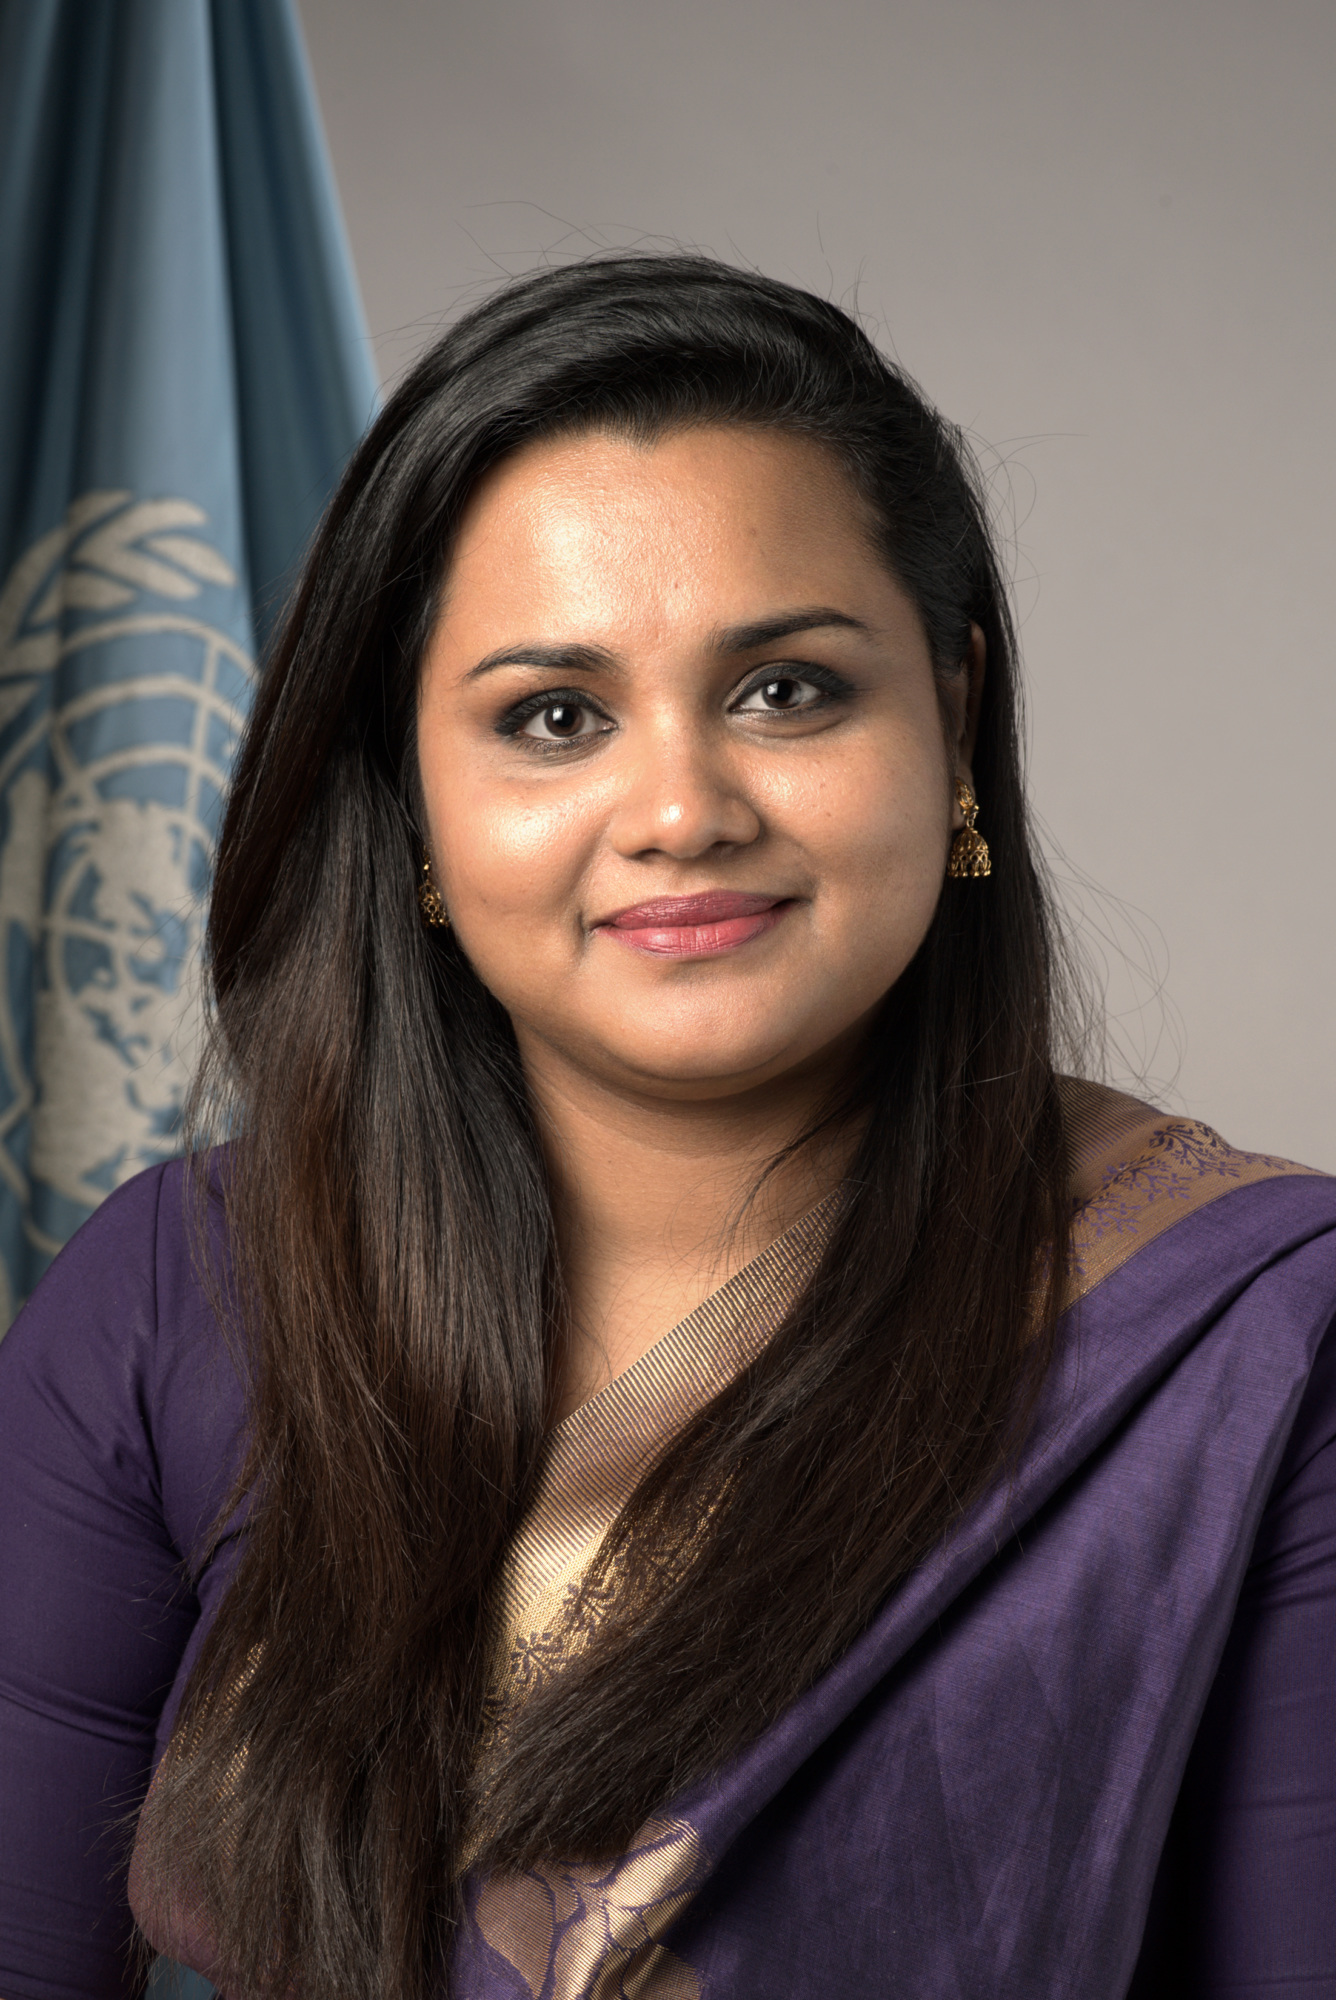 Jayathma Wickramanayake, Youth Envoy